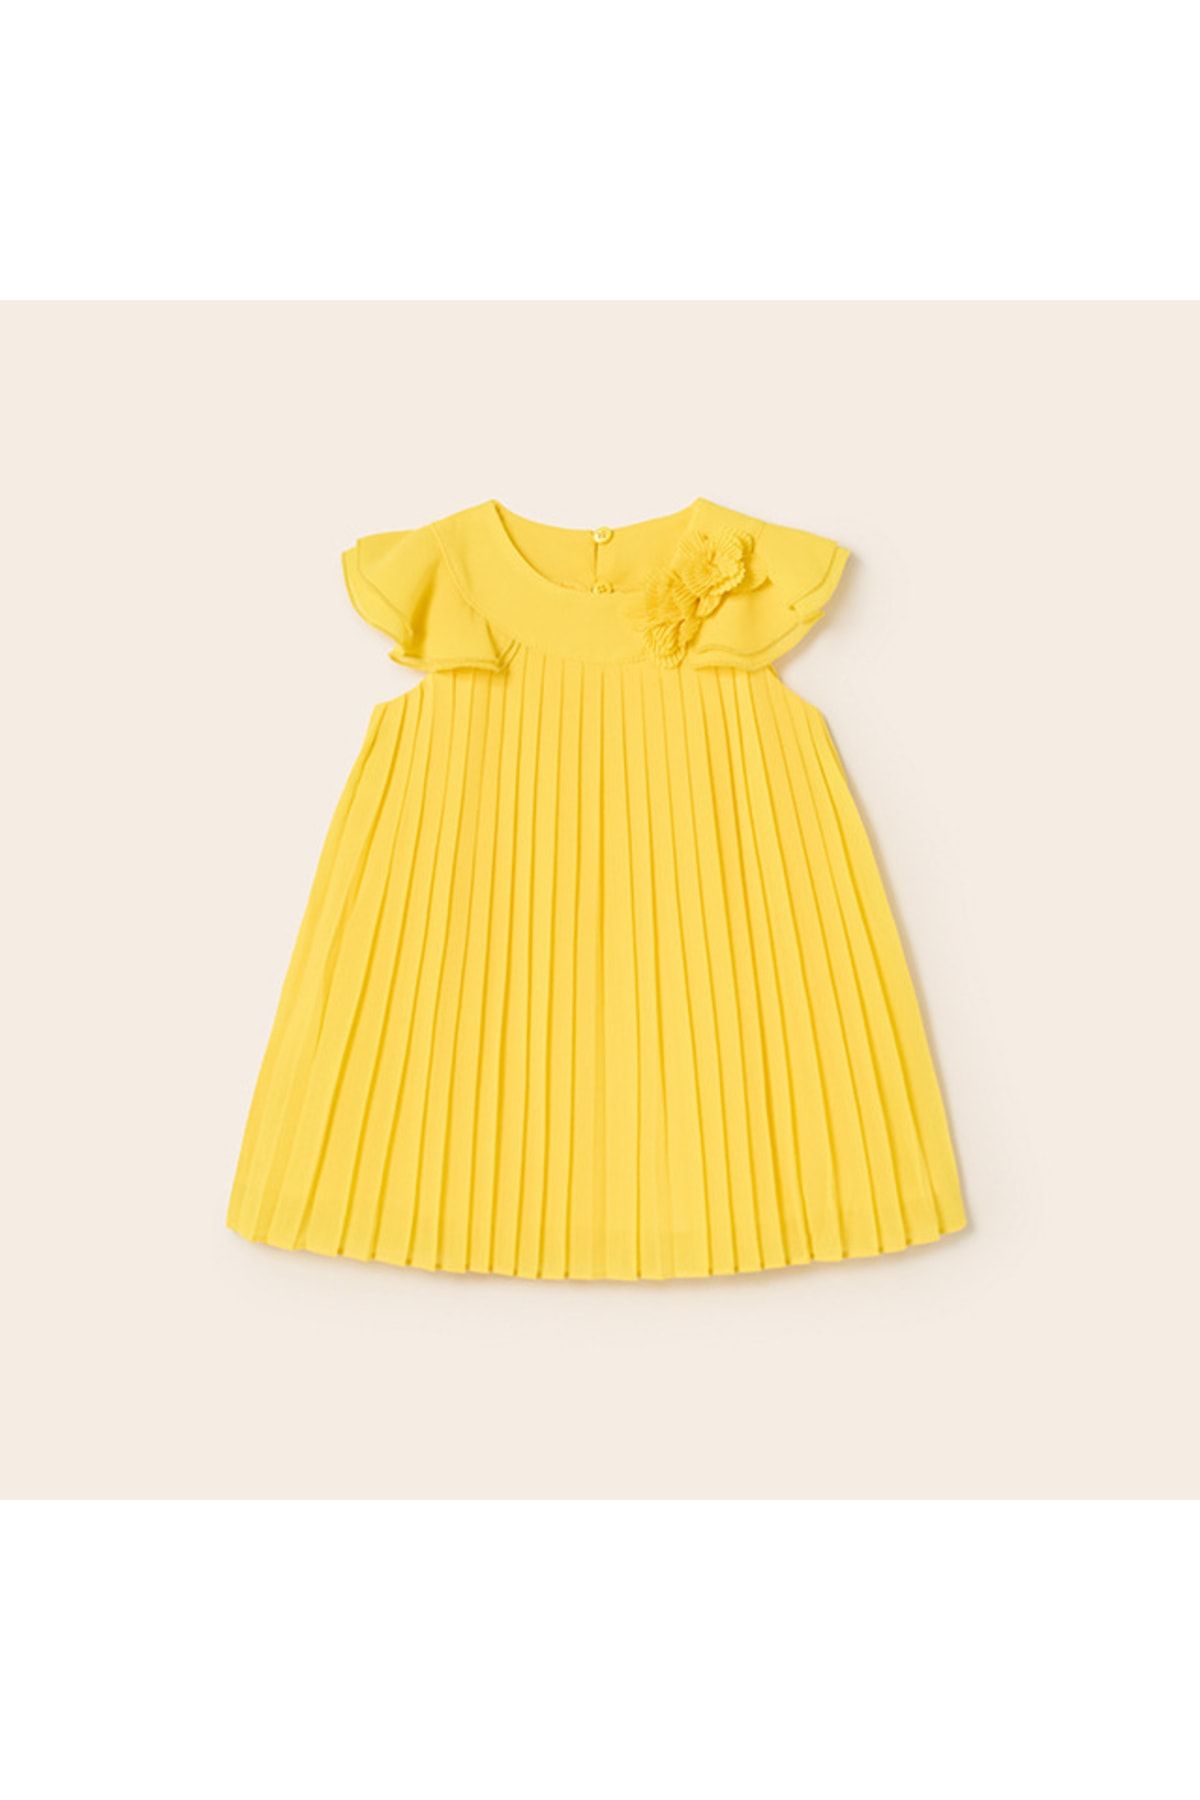 Mayoral Kız Bebek Pilili Şifon Içi Pamuklu Sarı Elbise L23y1960